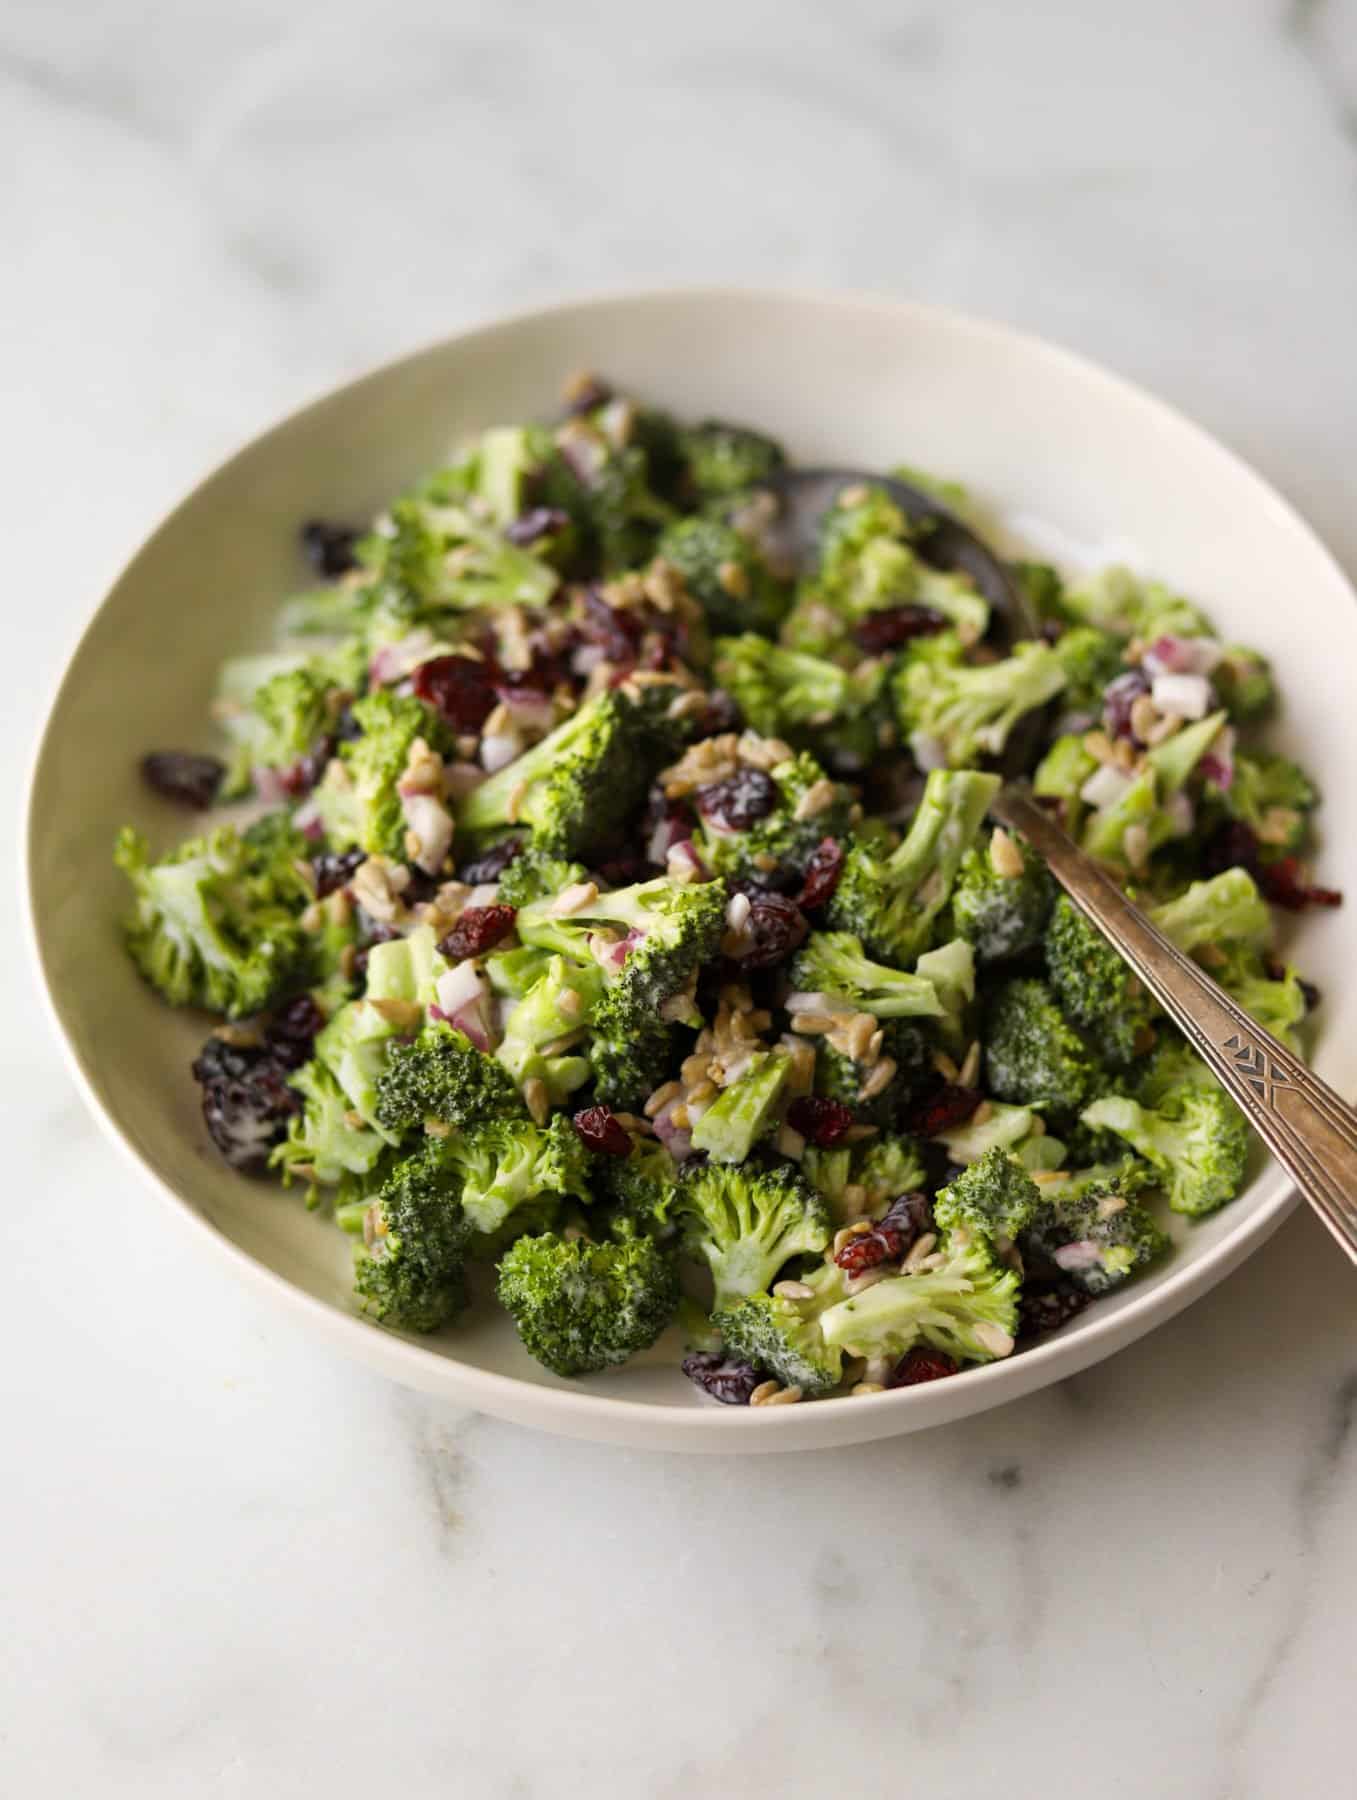 Broccoli salad in a white bowl